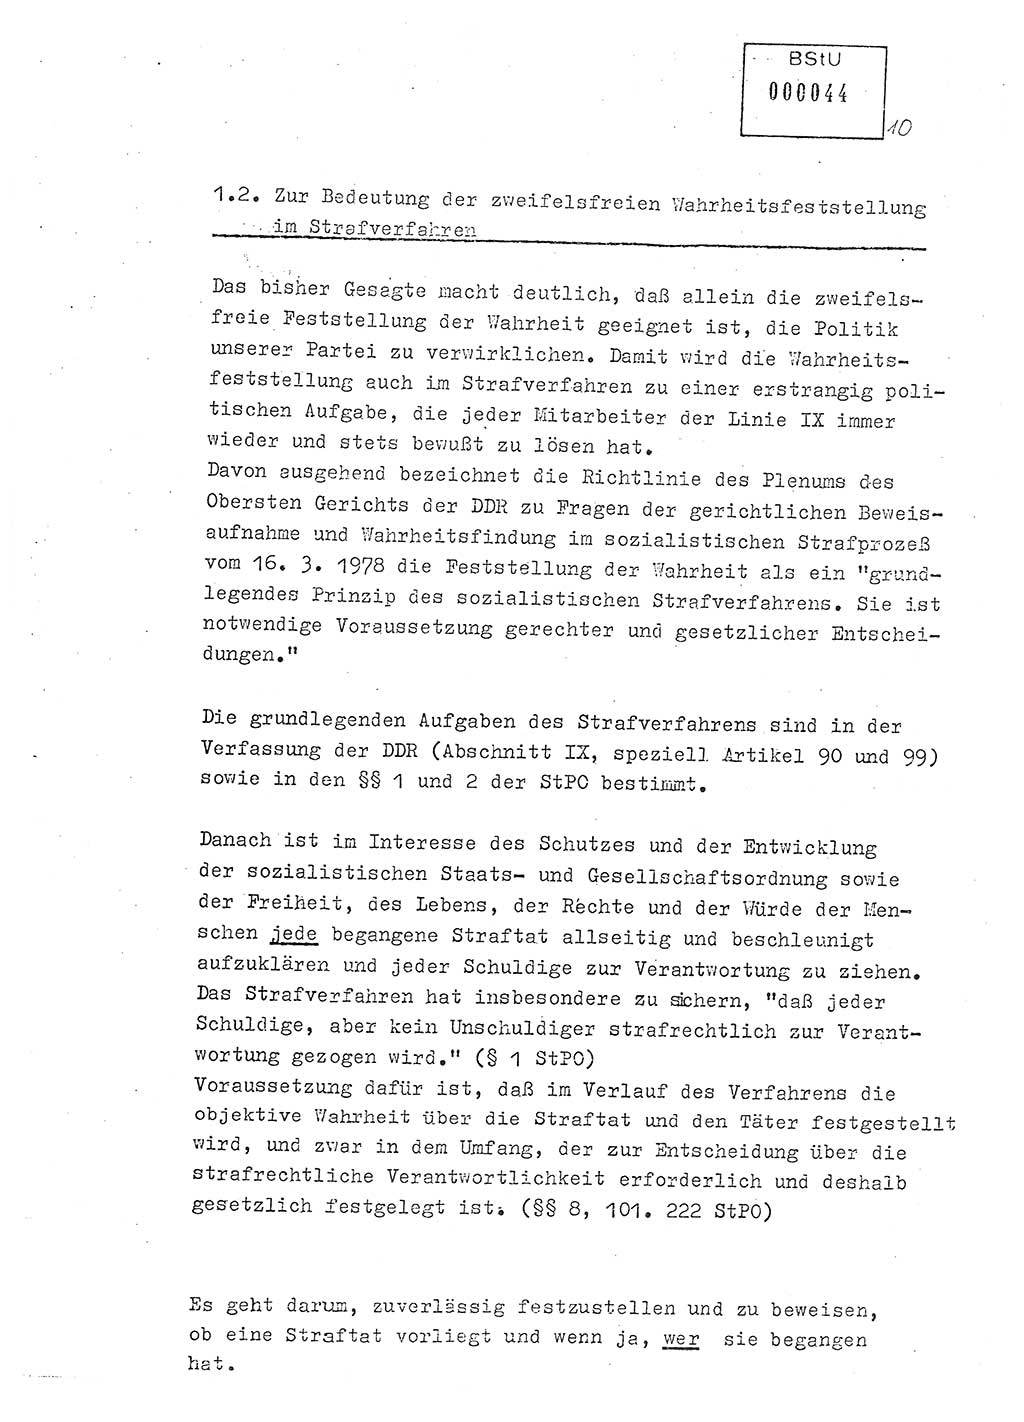 Lektion Ministerium für Staatssicherheit (MfS) [Deutsche Demokratische Republik (DDR)], Hauptabteilung (HA) Ⅸ, Berlin 1979, Seite 10 (Lekt. Bew.-Fü. EV MfS DDR HA Ⅸ 1979, S. 10)